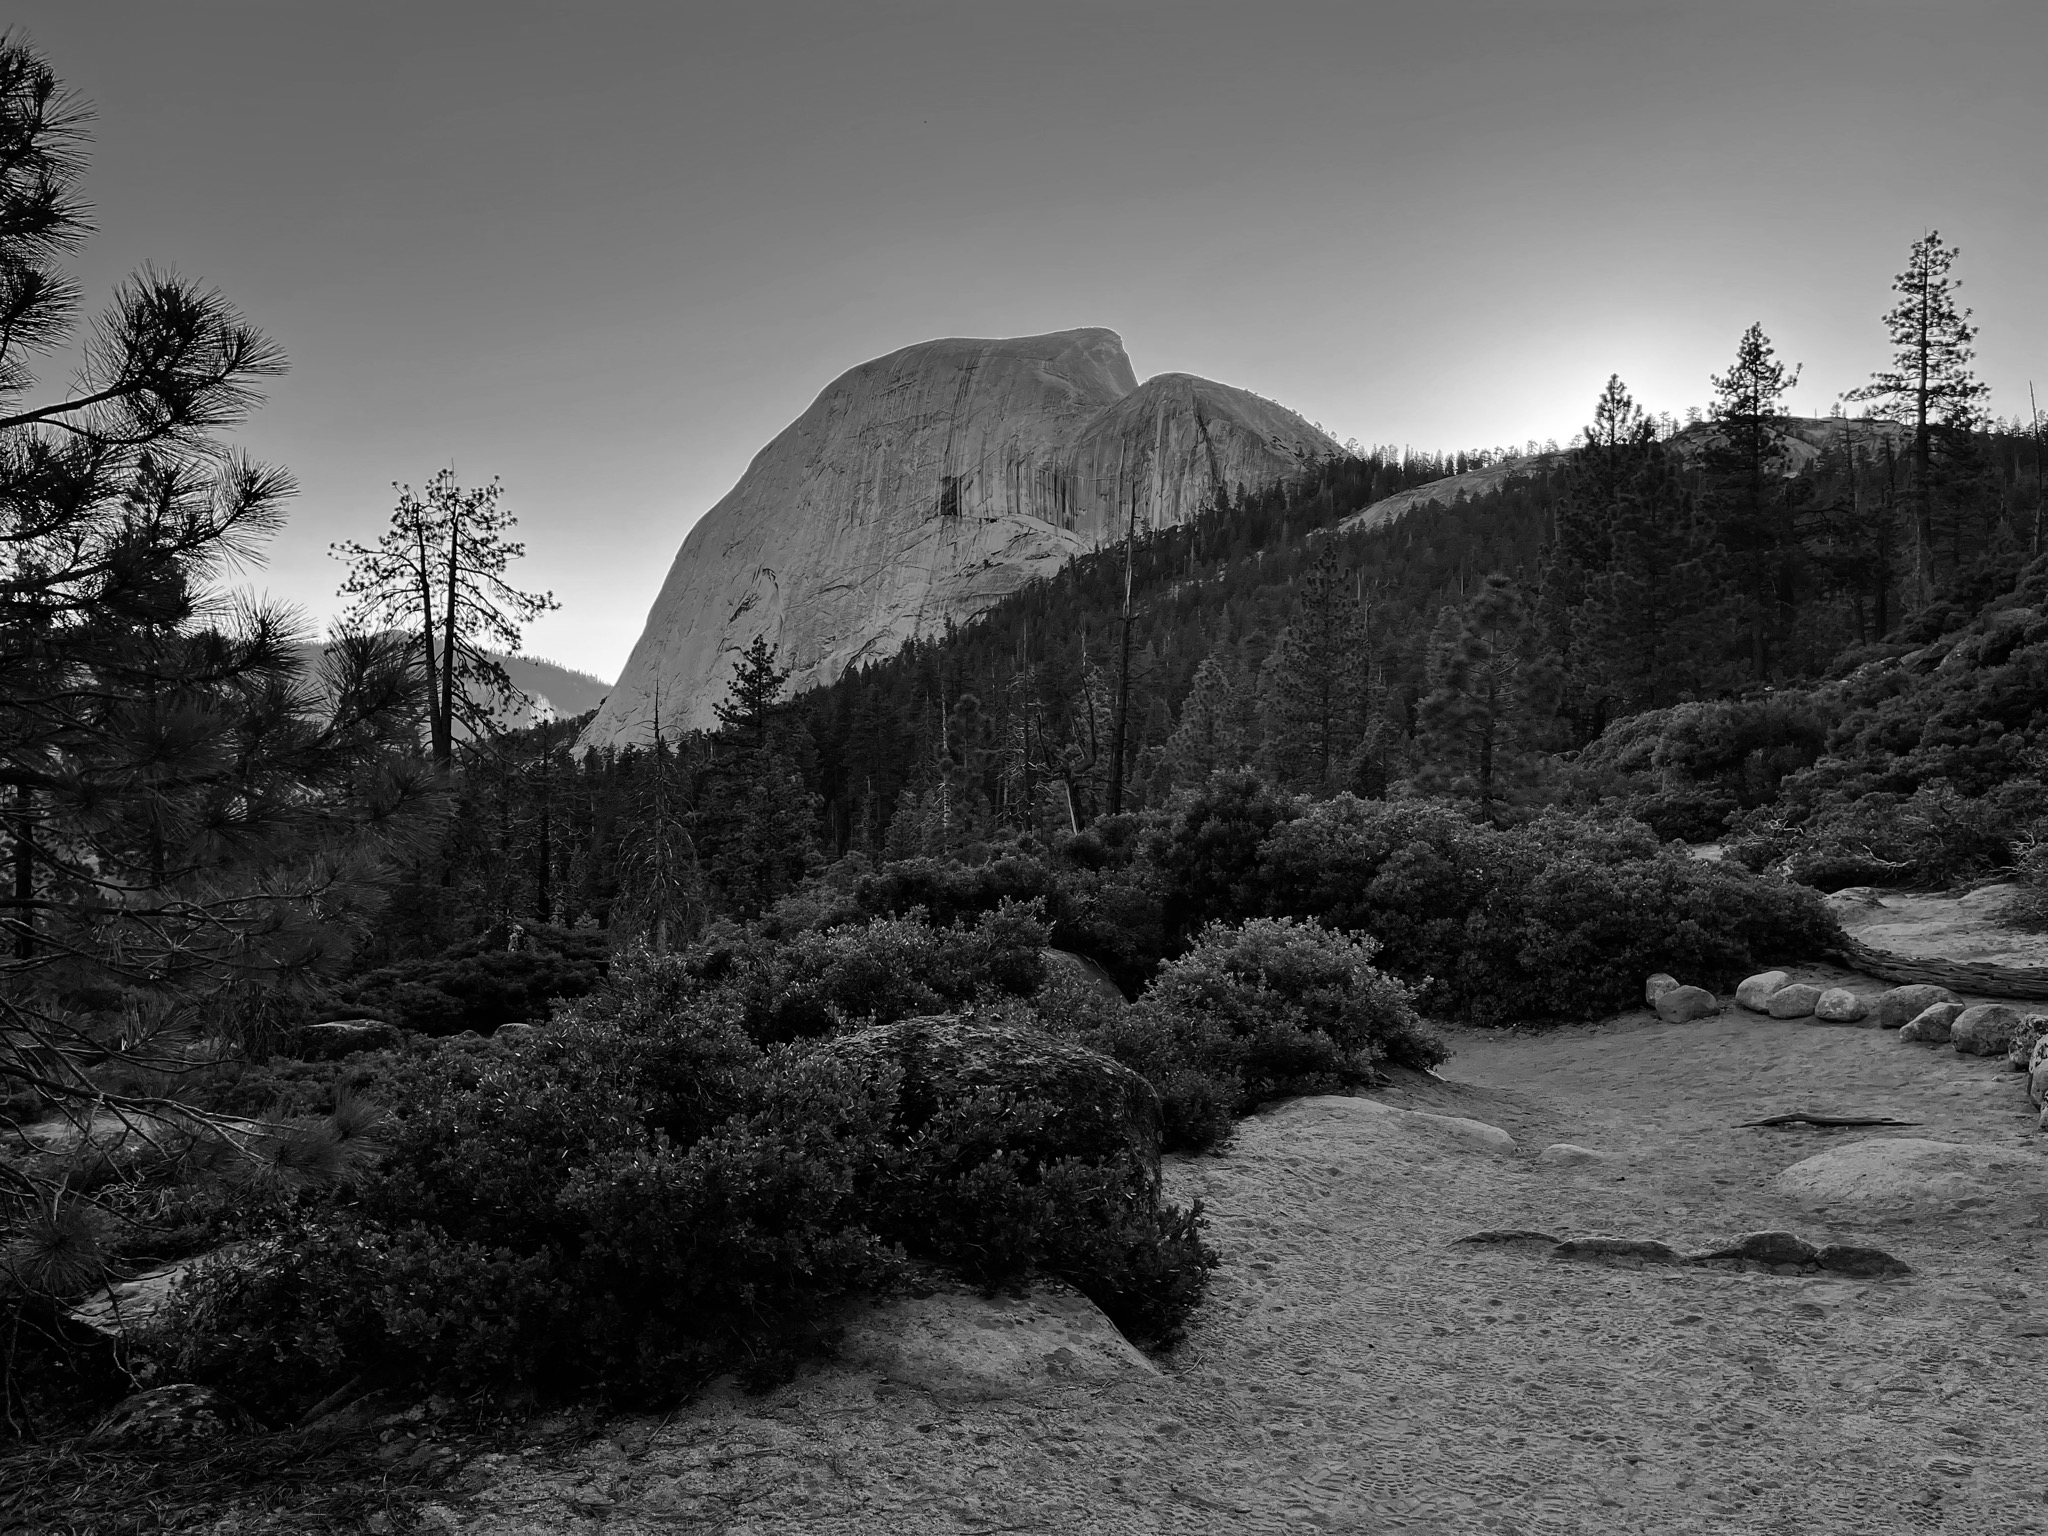 Night Mode image taken - Yosemite National Park